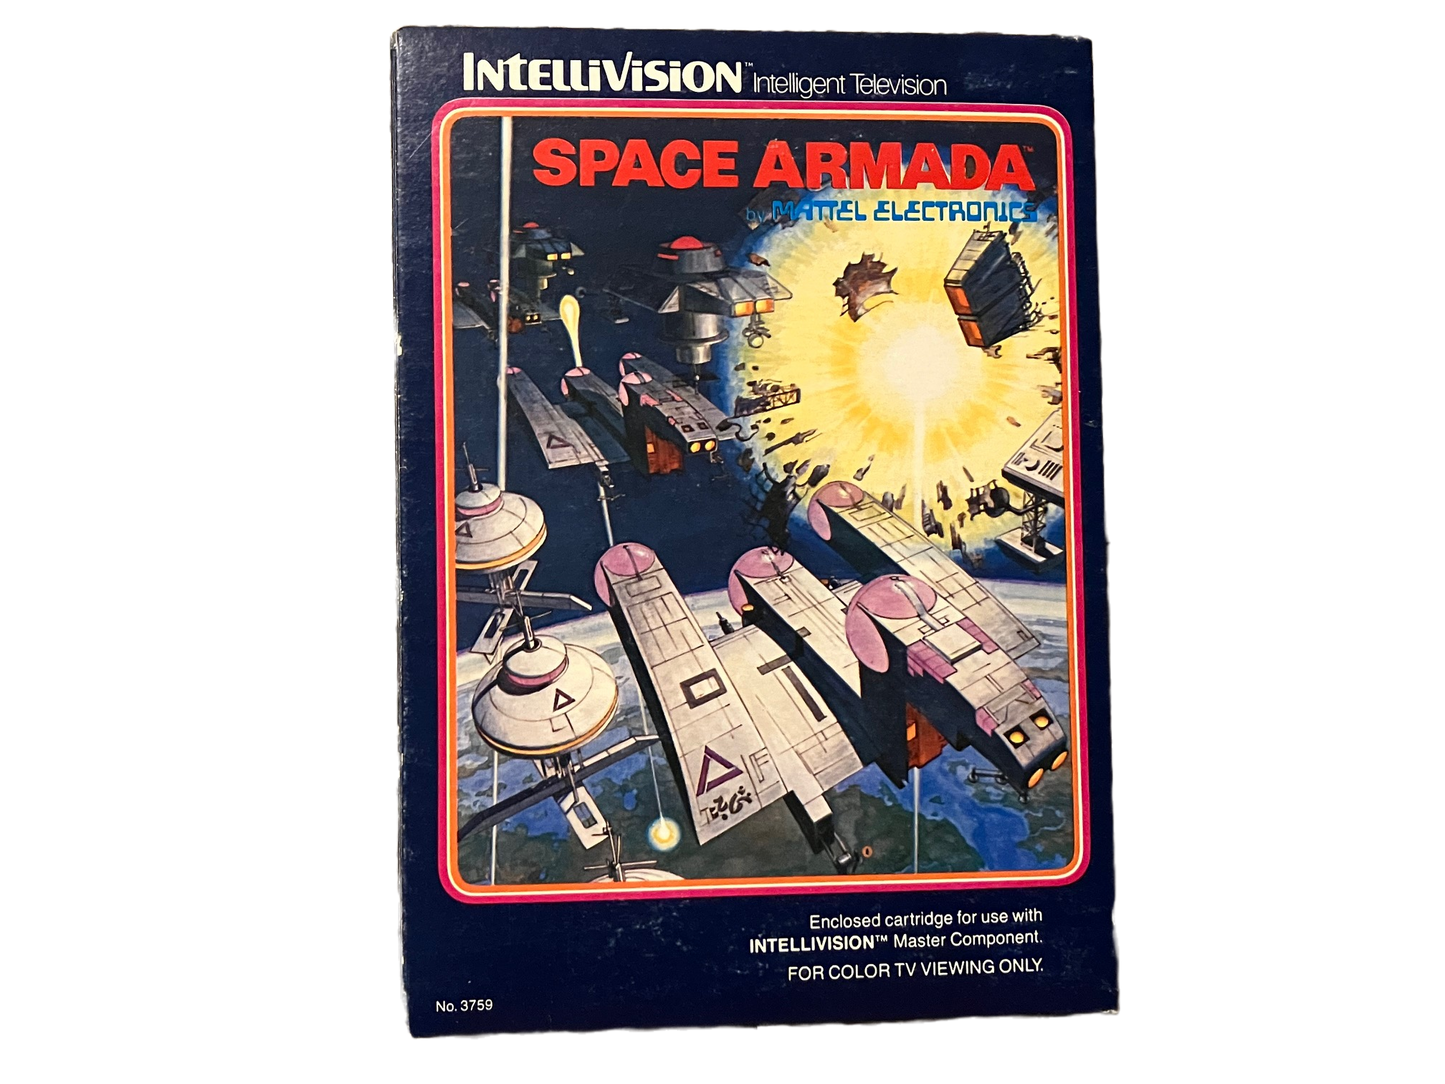 Space Armada Intellivision Video Game